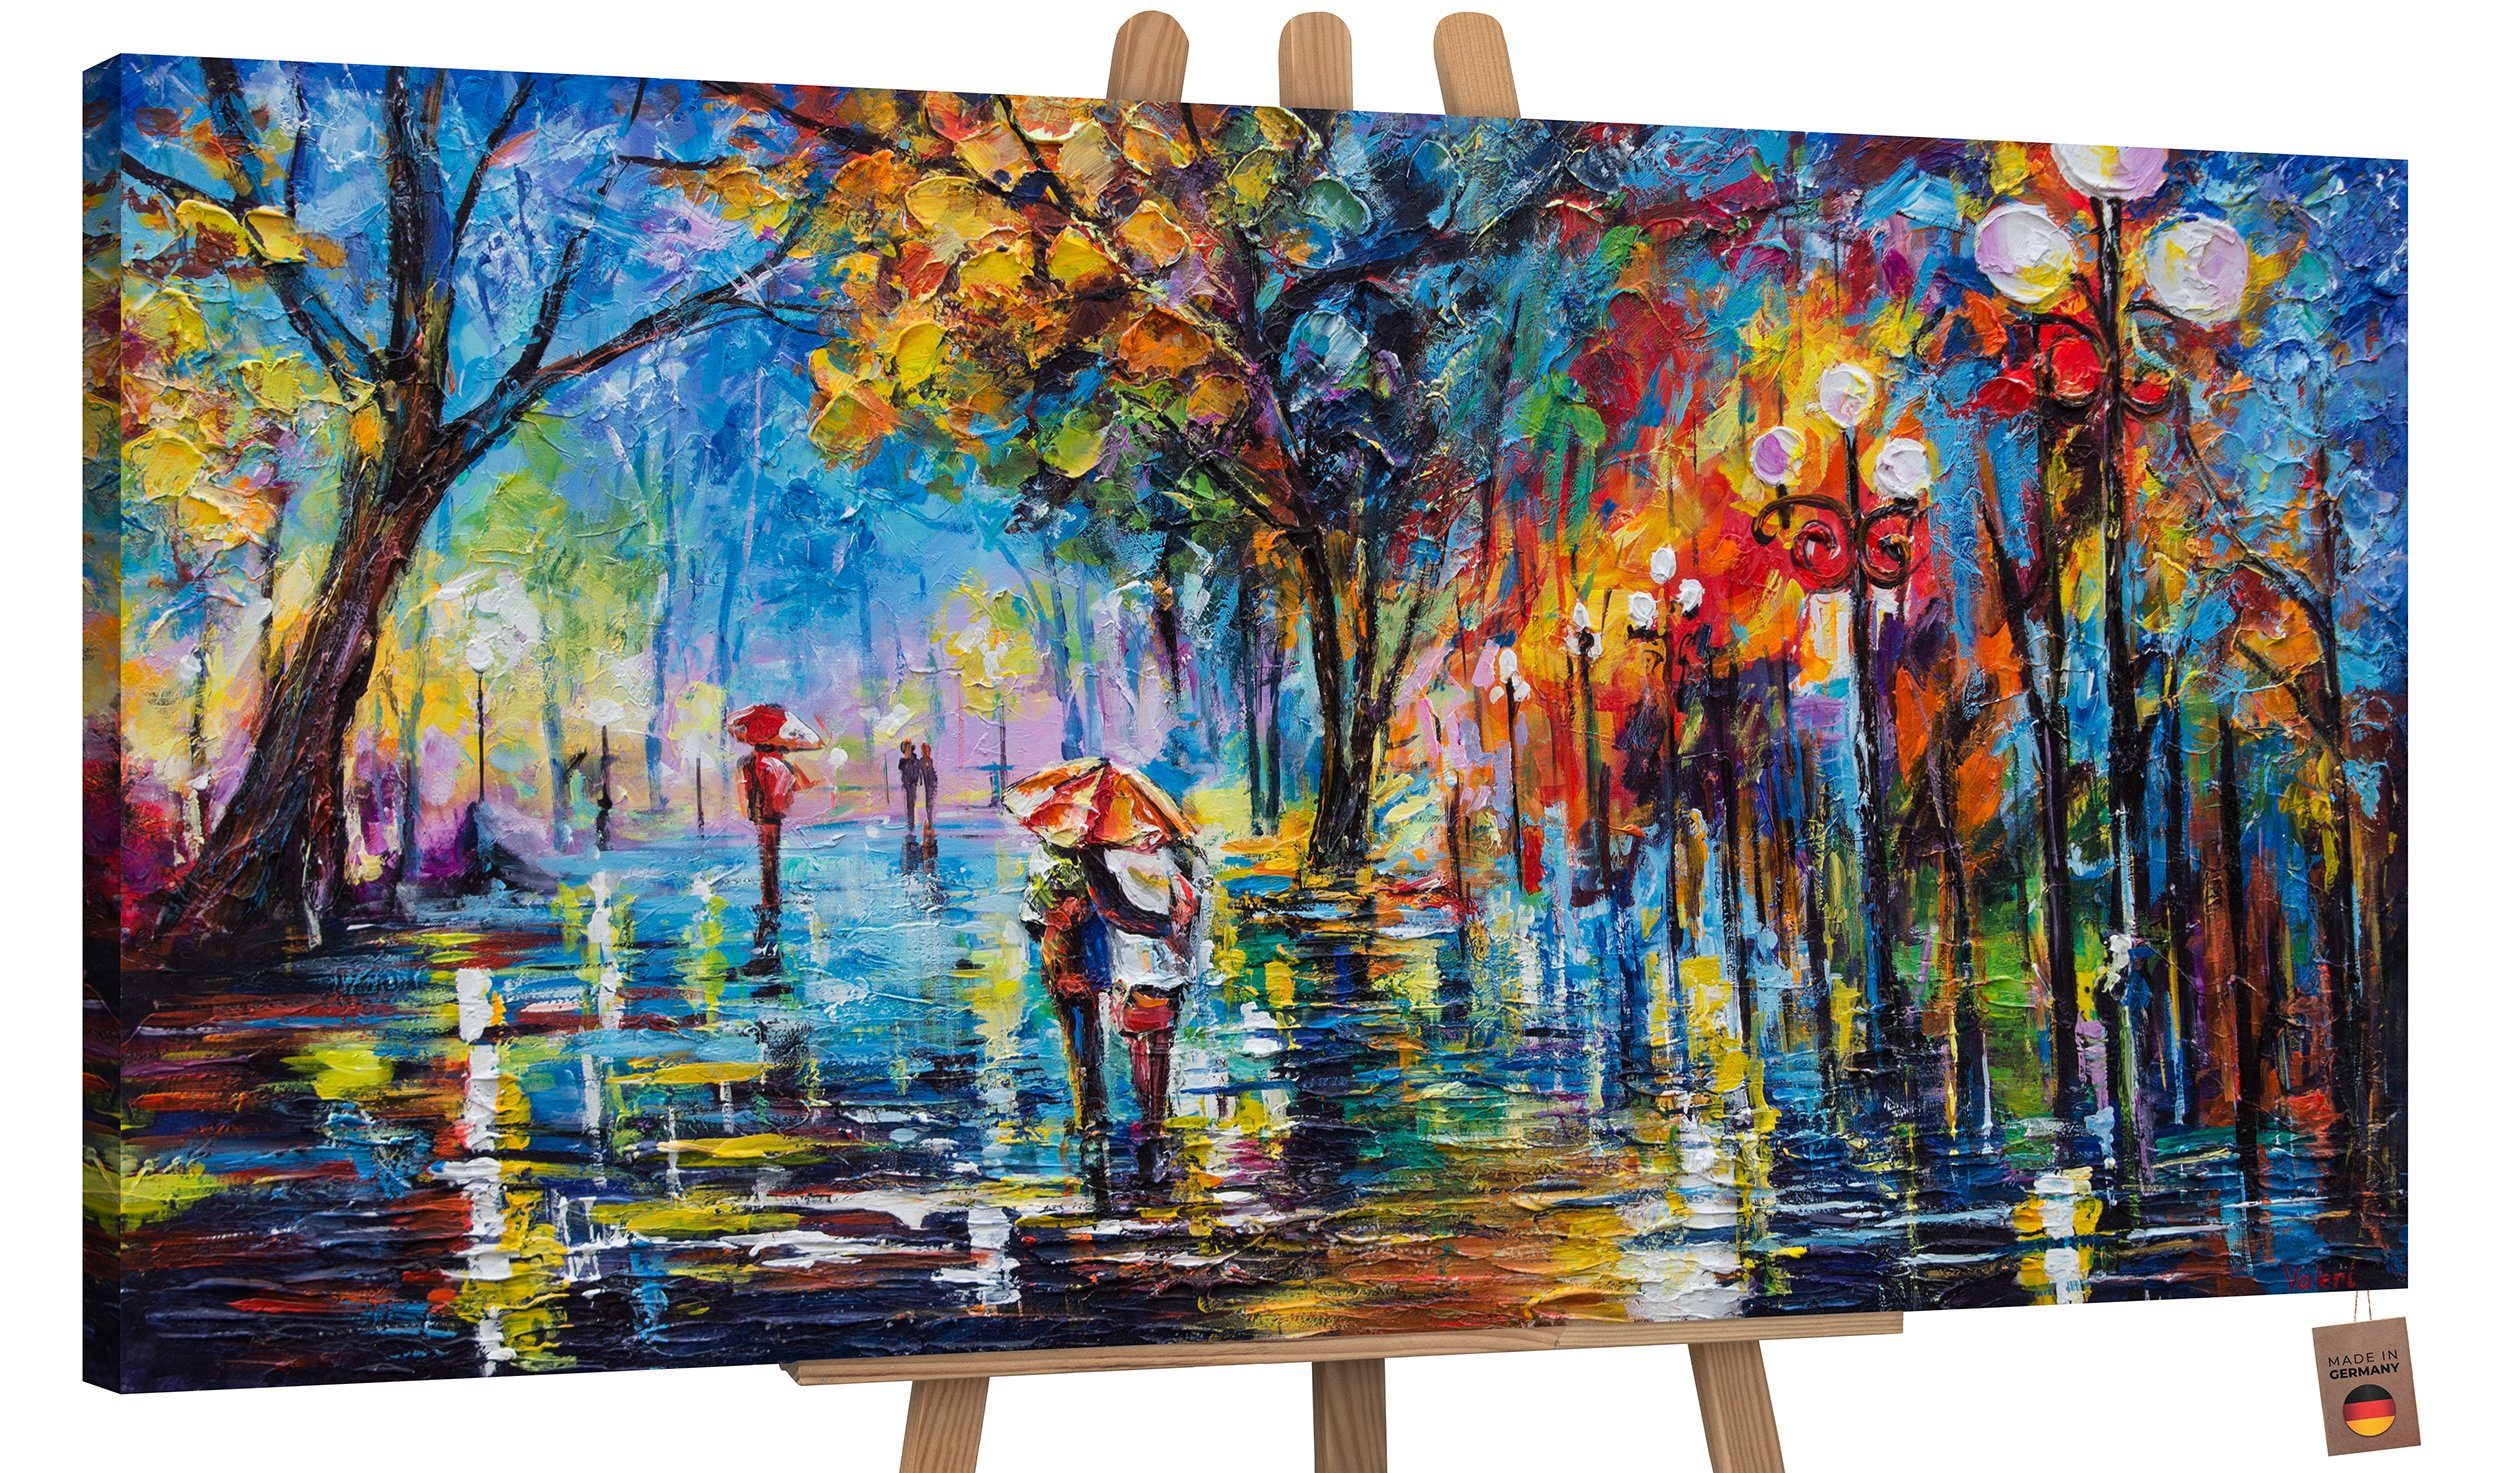 Allee, Bild Handgemalt Schattenfugenrahmen Herbstliche Menschen, Allee Baum Gemälde Regenschirm Ohne Leinwand YS-Art Paar